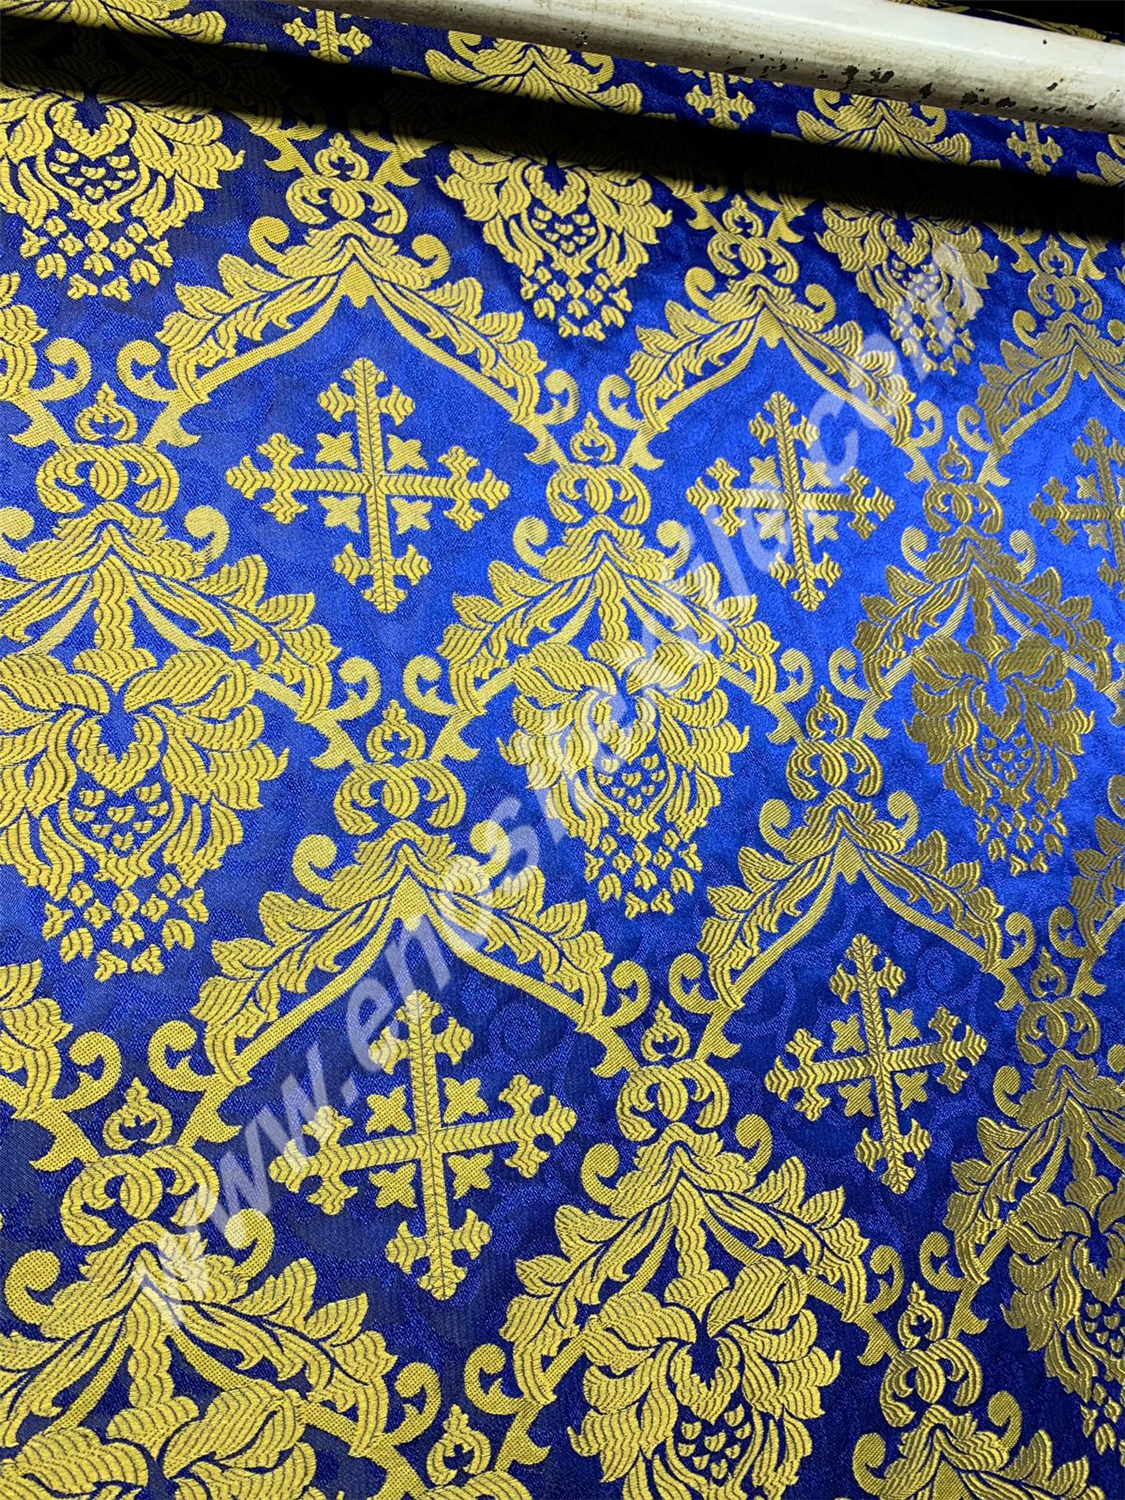 KL-078 Dark Blue-Gold Brocade Fabrics